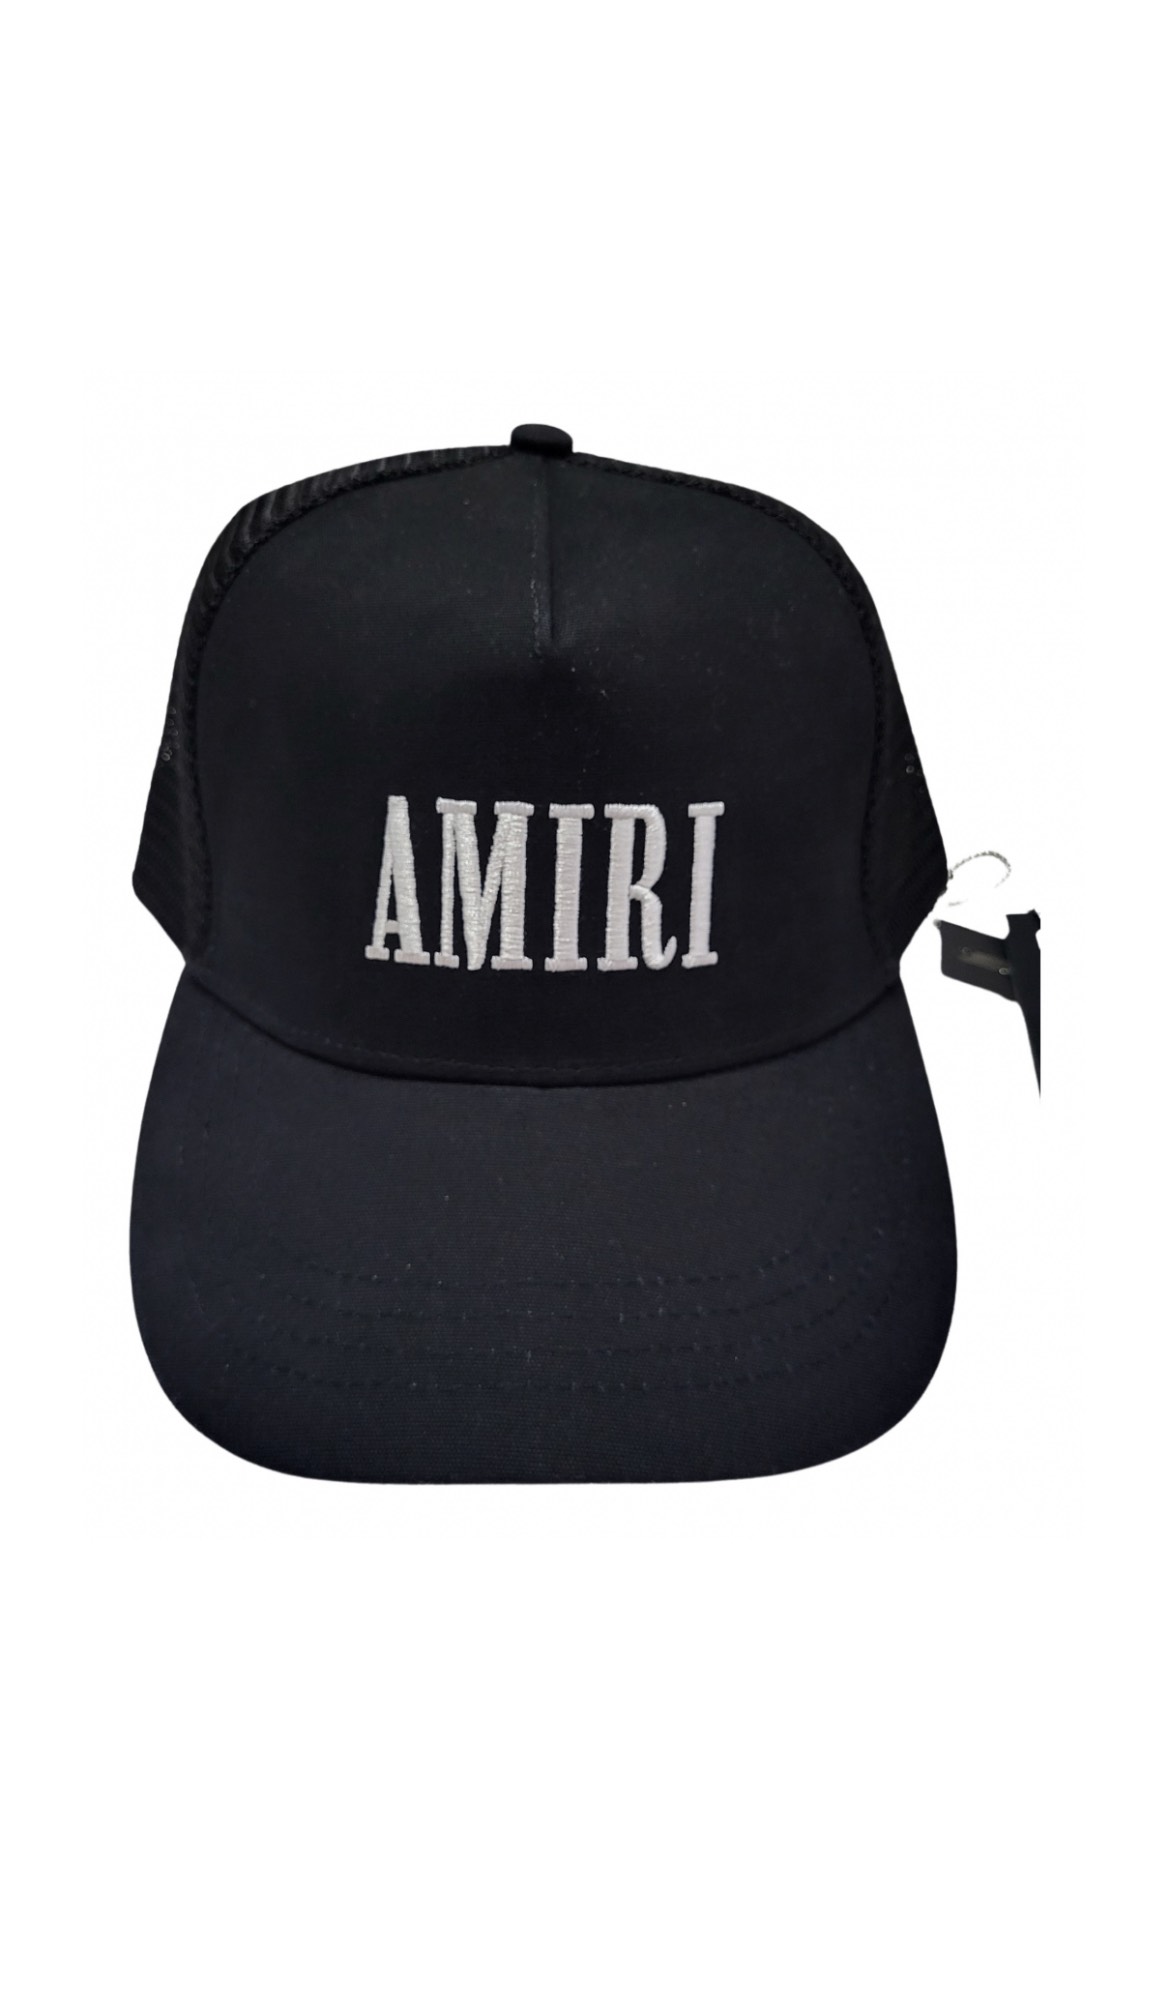 AMIRI CORE LOGO TRUCKER HAT - 1